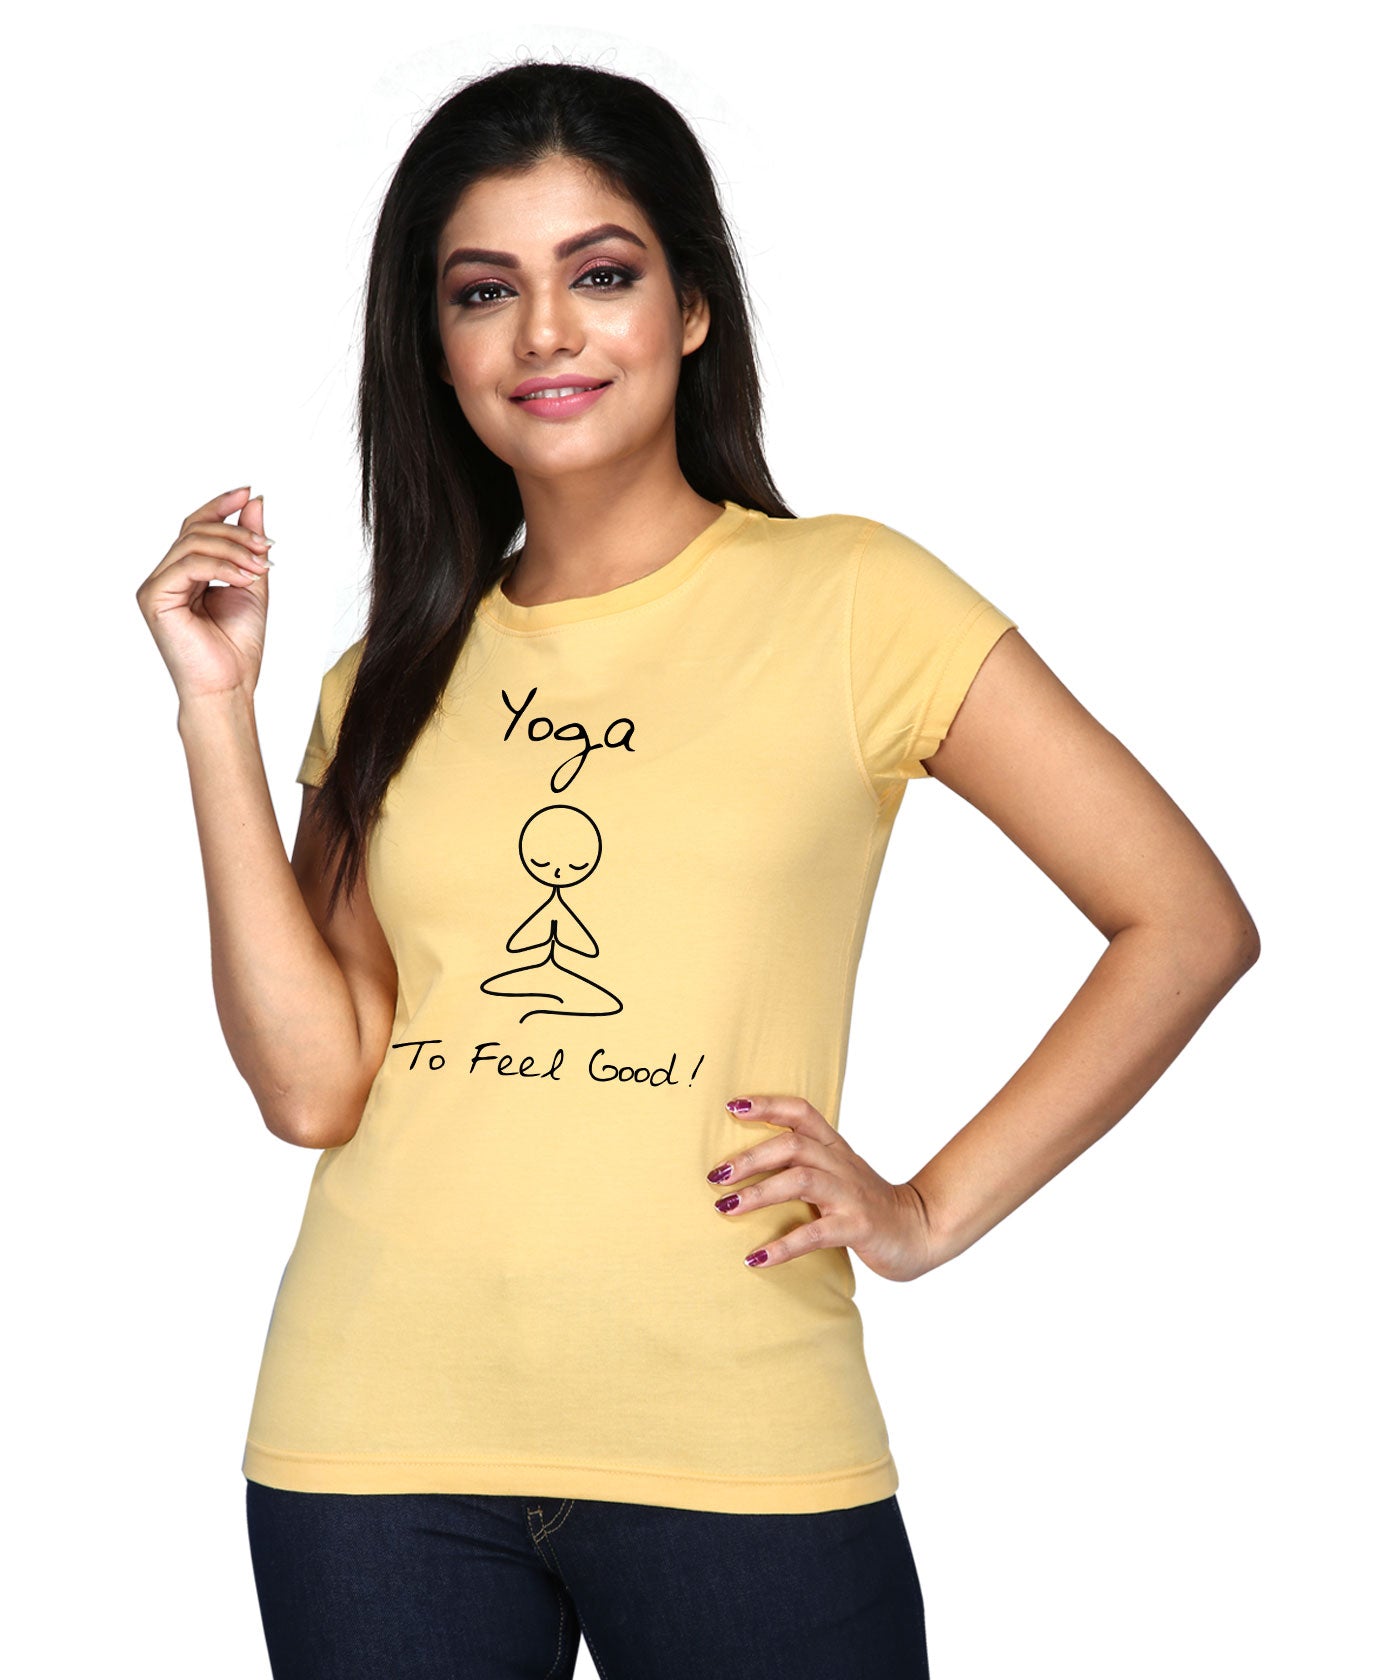 Yoga To Feel Good - Premium Round Neck Cotton Tees for Women - Golden Yellow